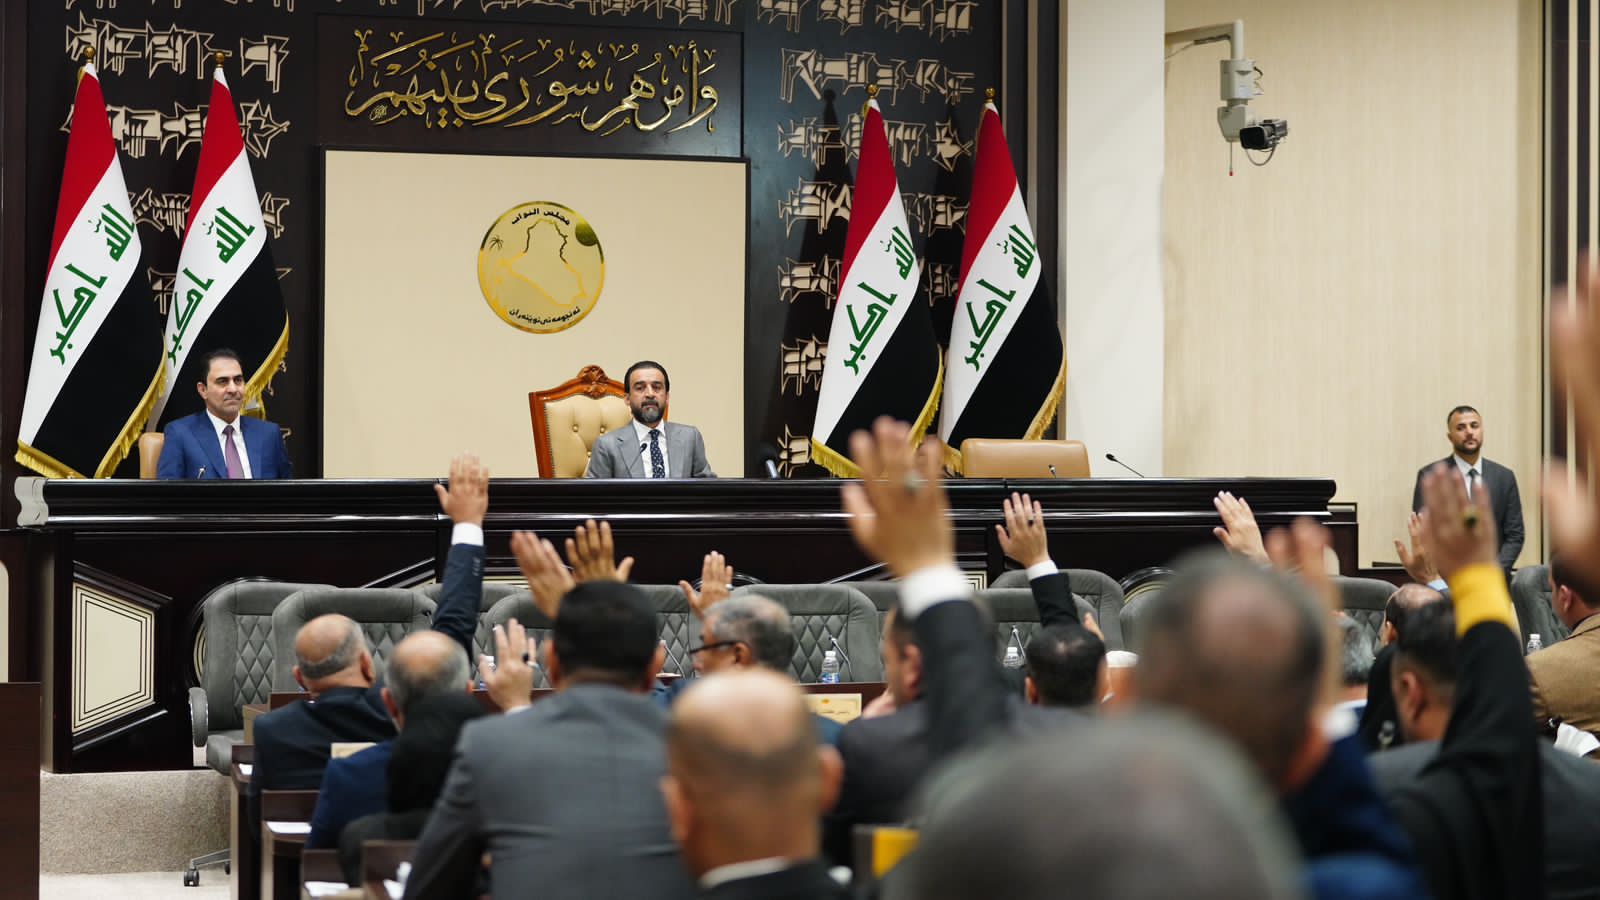 البرلمان العراقي يستكمل الكابينة الوزارية لحكومة السوداني بمنح الثقة لوزيرين